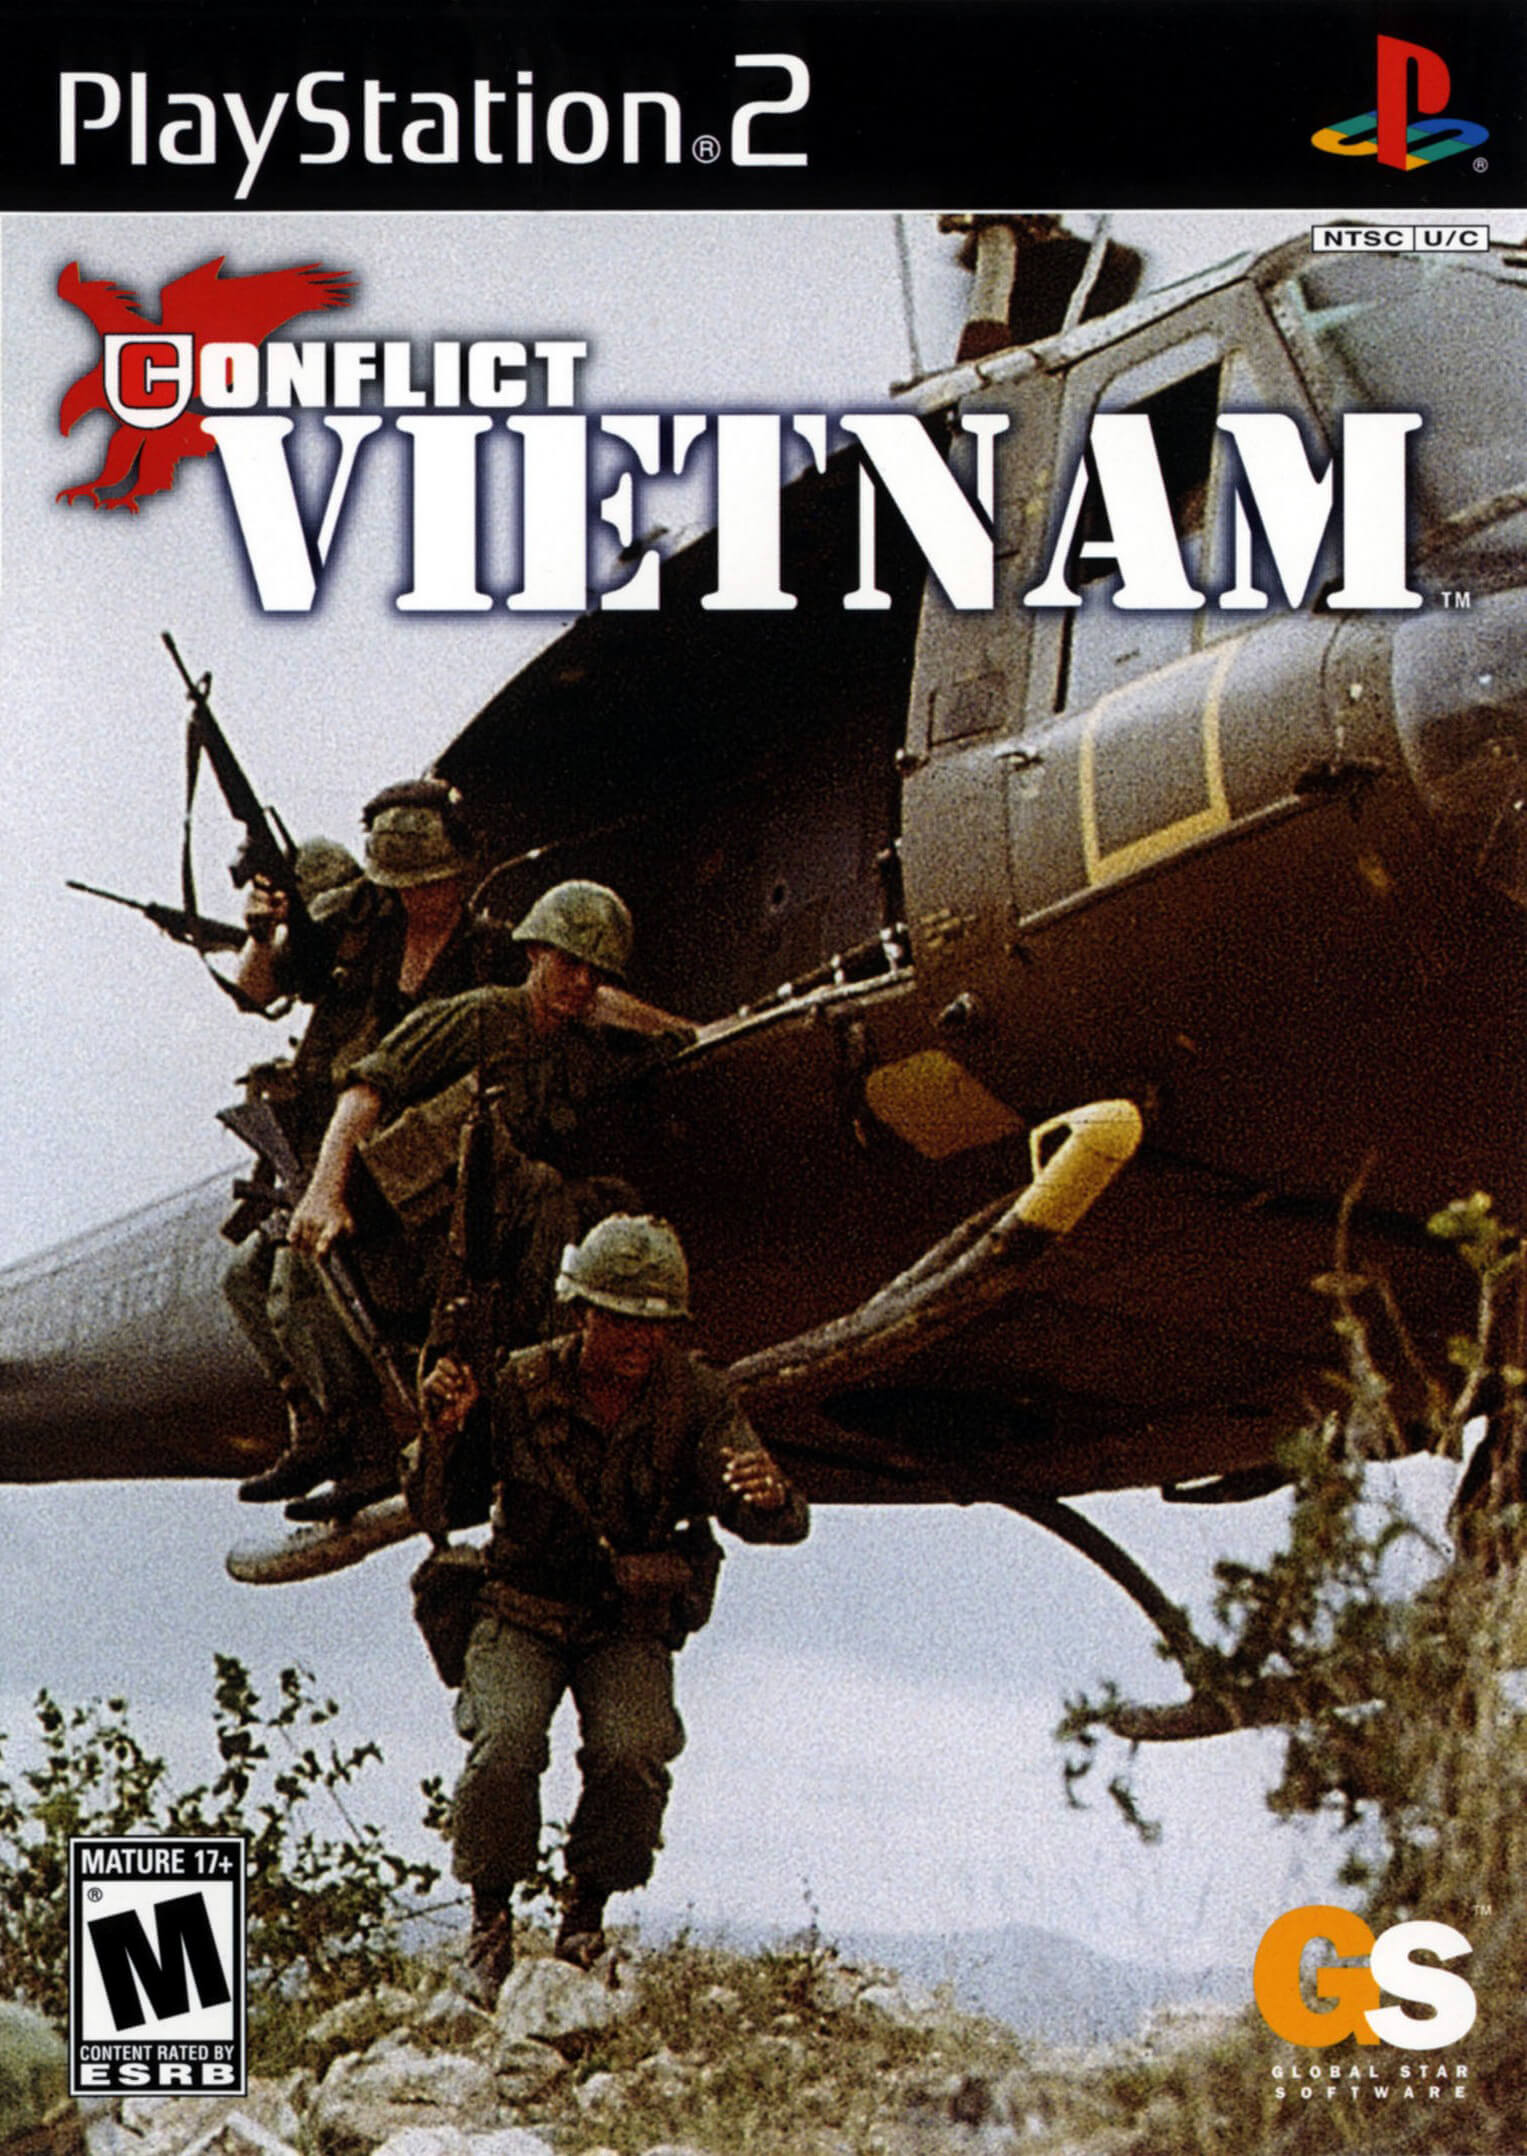 Conflict vietnam music download